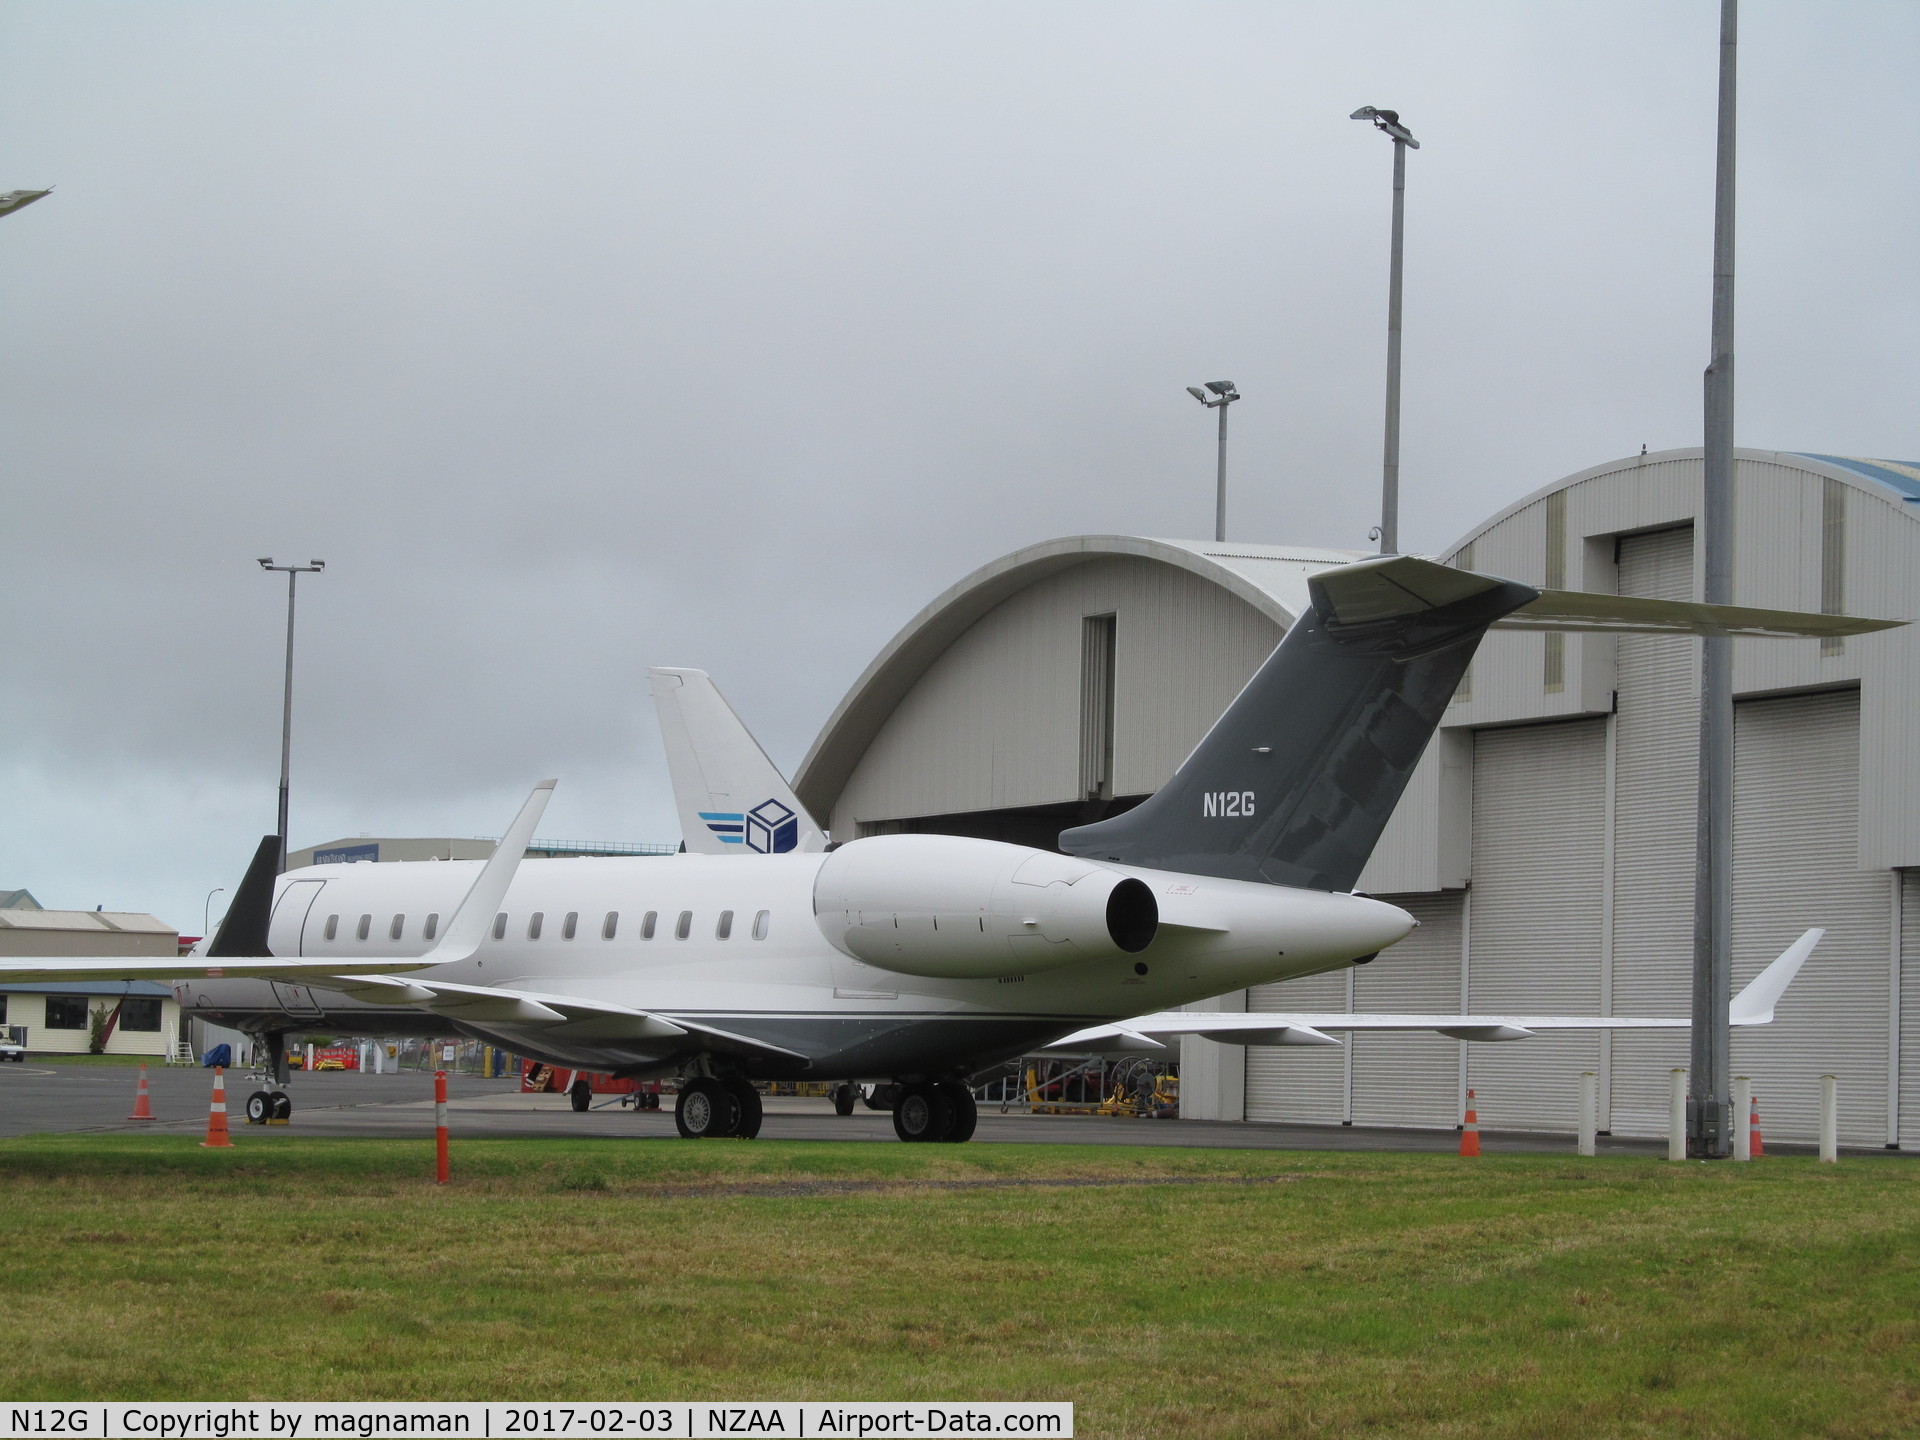 N12G, 2014 Bombardier BD-700-1A10 Global 6000 C/N 9641, back in NZ - owner has 